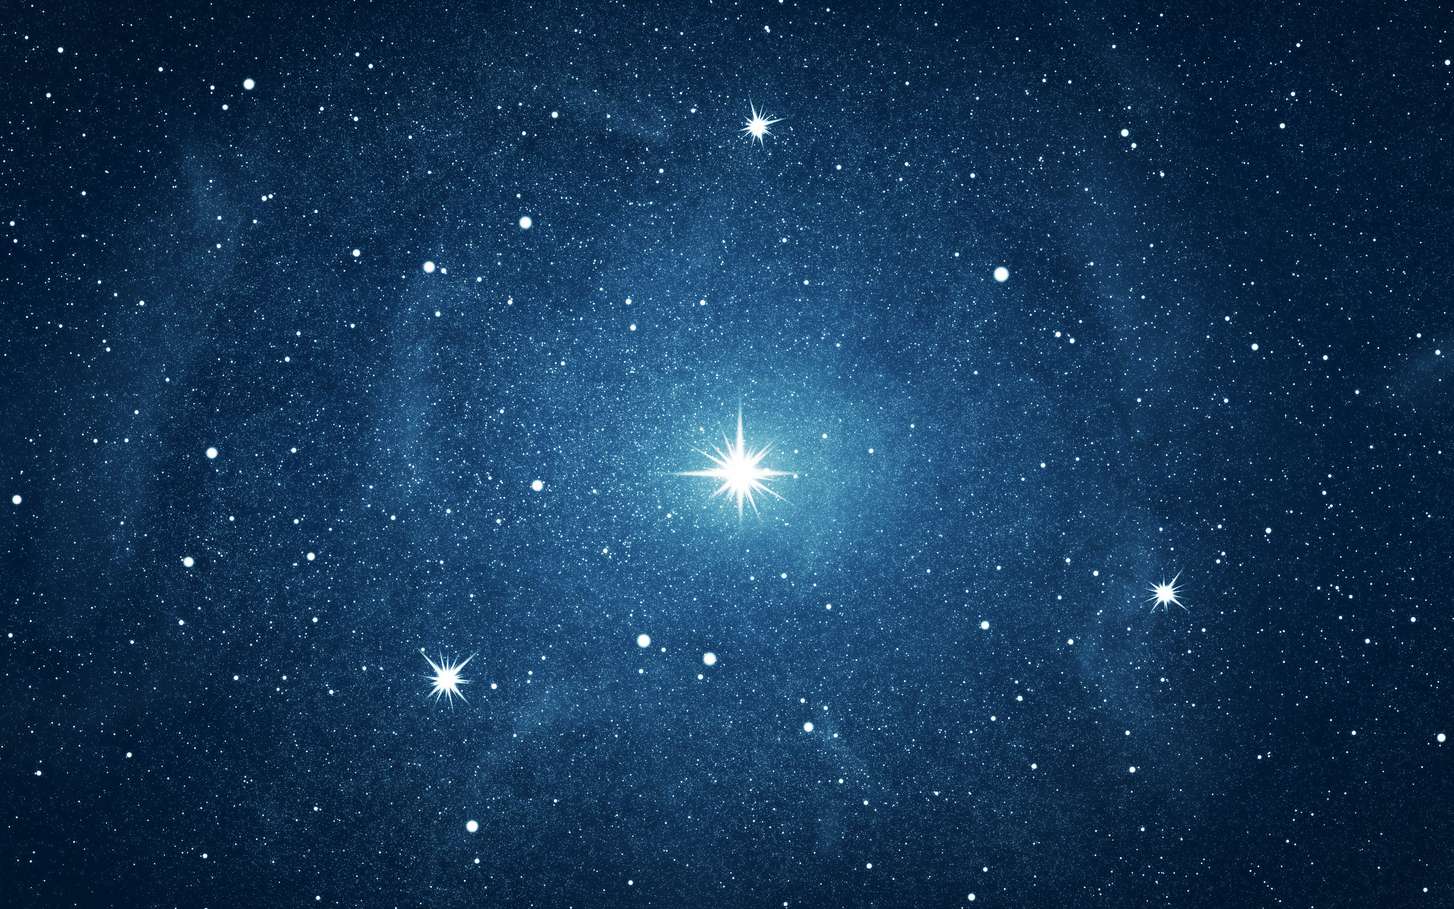 Résultat de recherche d'images pour "image étoile"